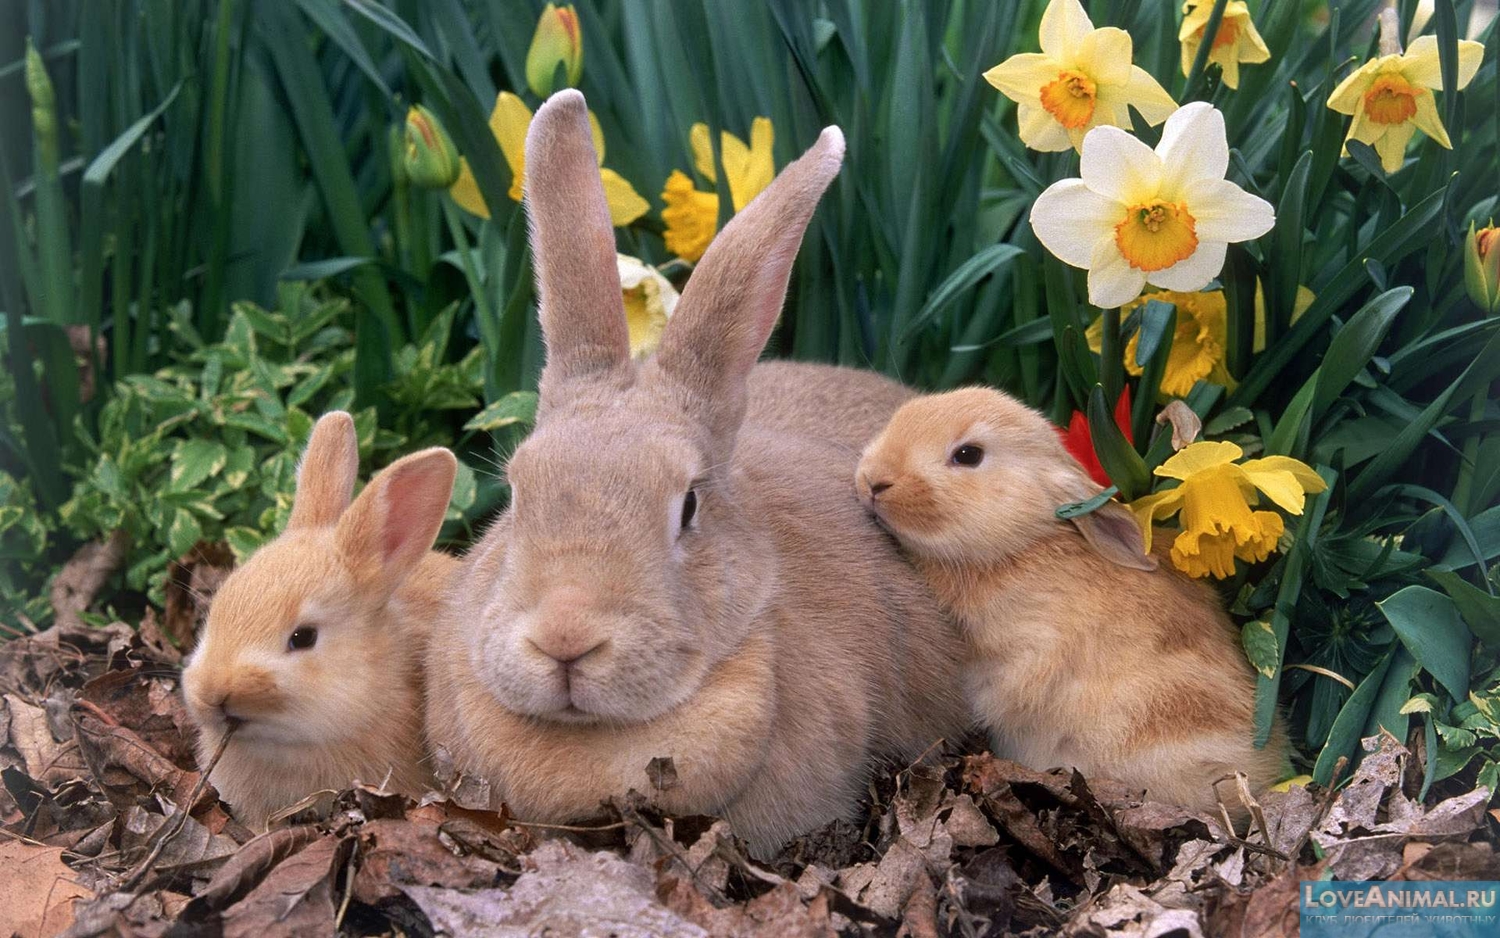 Кролики и кролиководство. Содержание, лечение, разведение и кормление